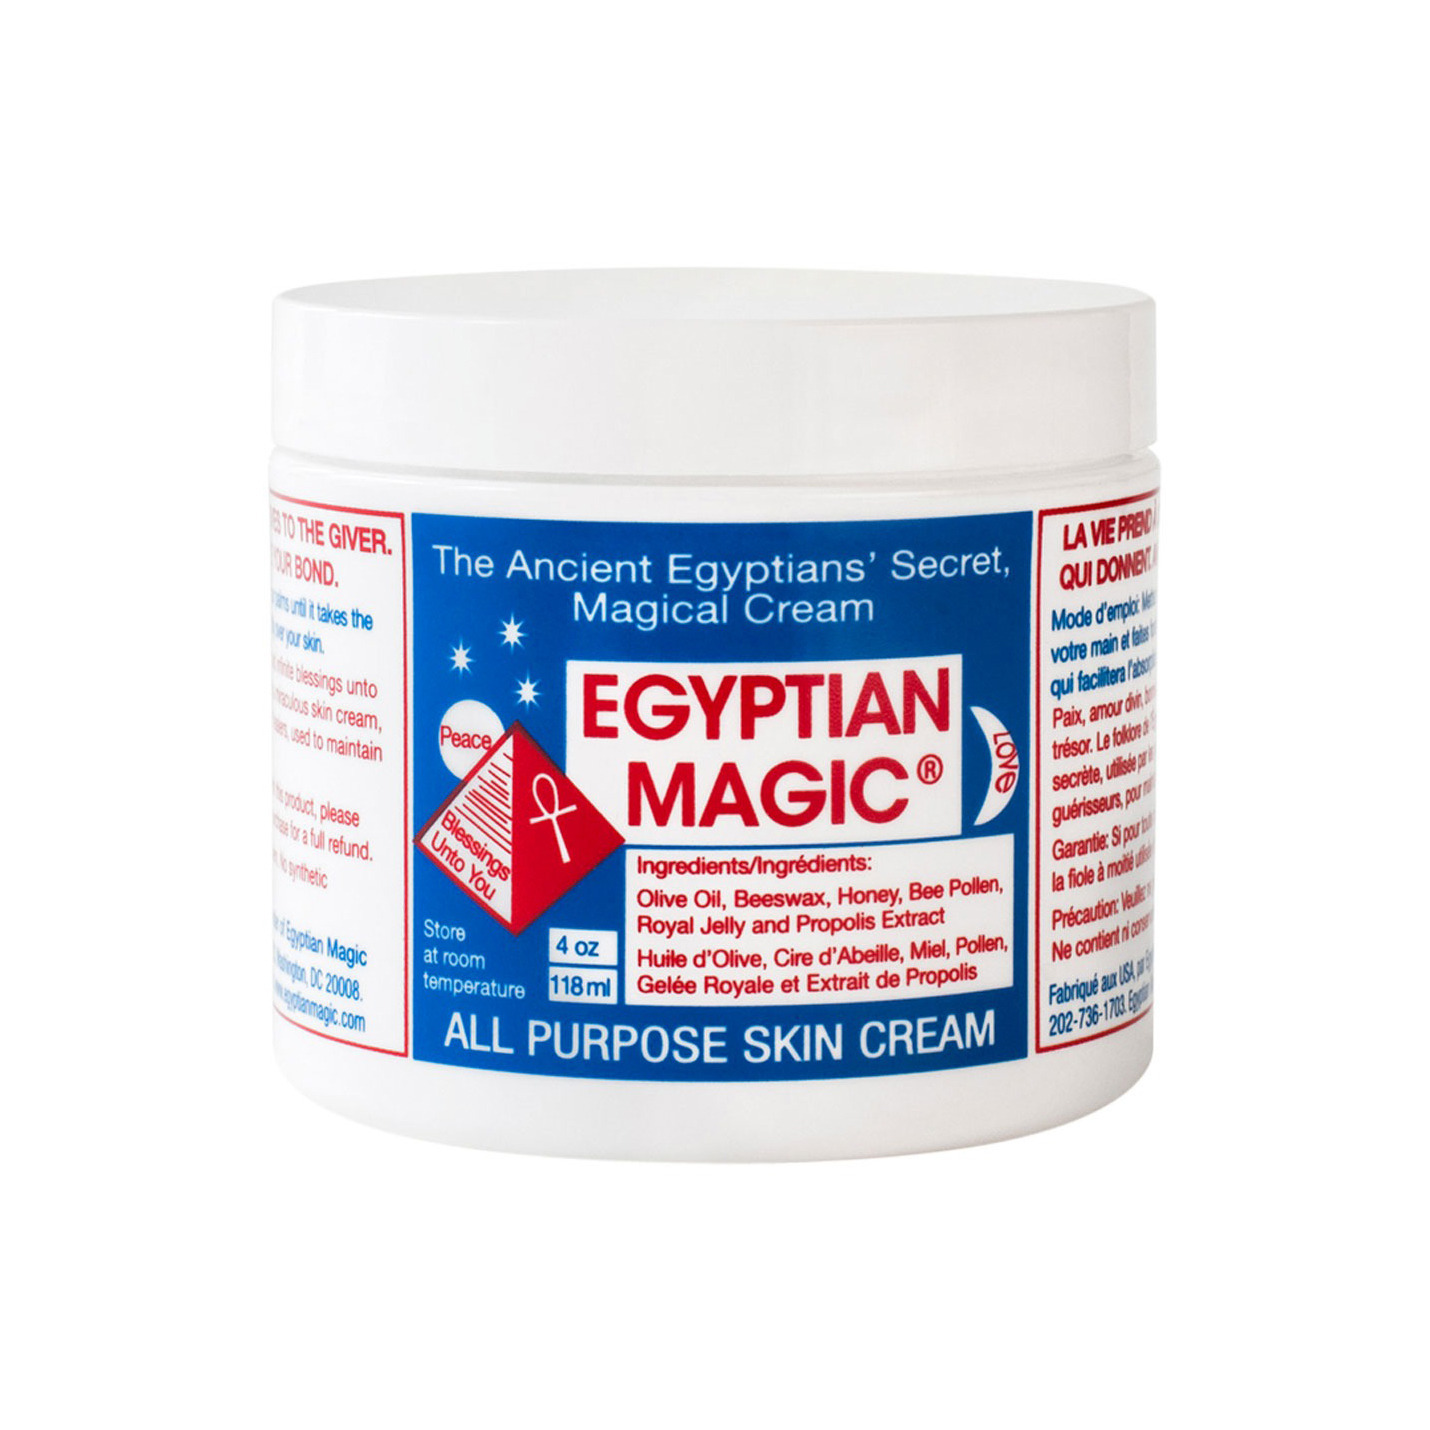 Kem dưỡng Egyptian Magic